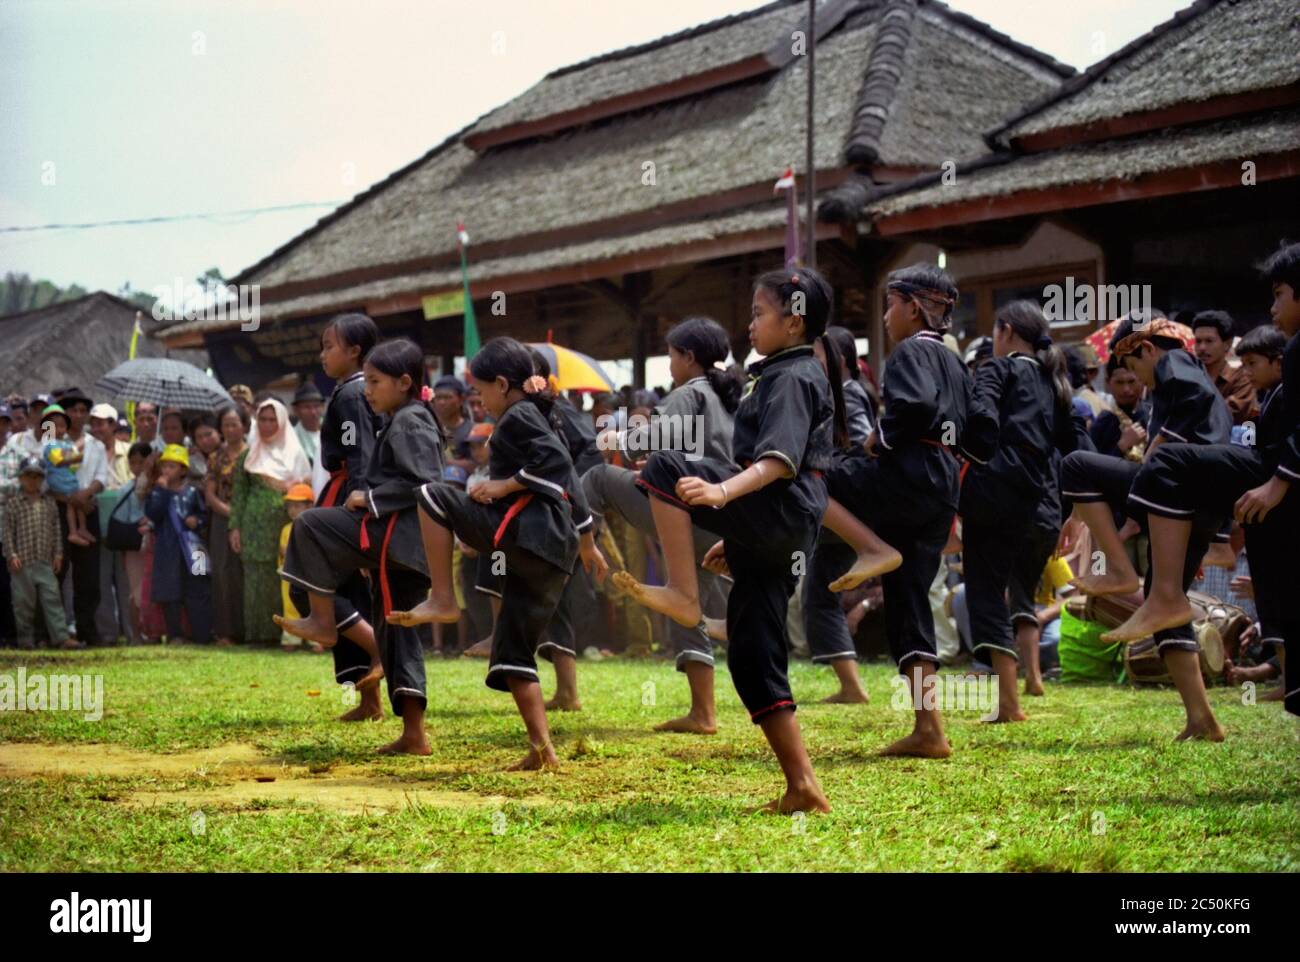 Exposición infantil de silat Pencak (arte marcial indonesio) durante el festival de cosecha de 2004 en la aldea de Ciptagelar, en la regencia de Sukabumi, provincia de Java Occidental, Indonesia. Agosto de 2004. Foto de archivo. Foto de stock